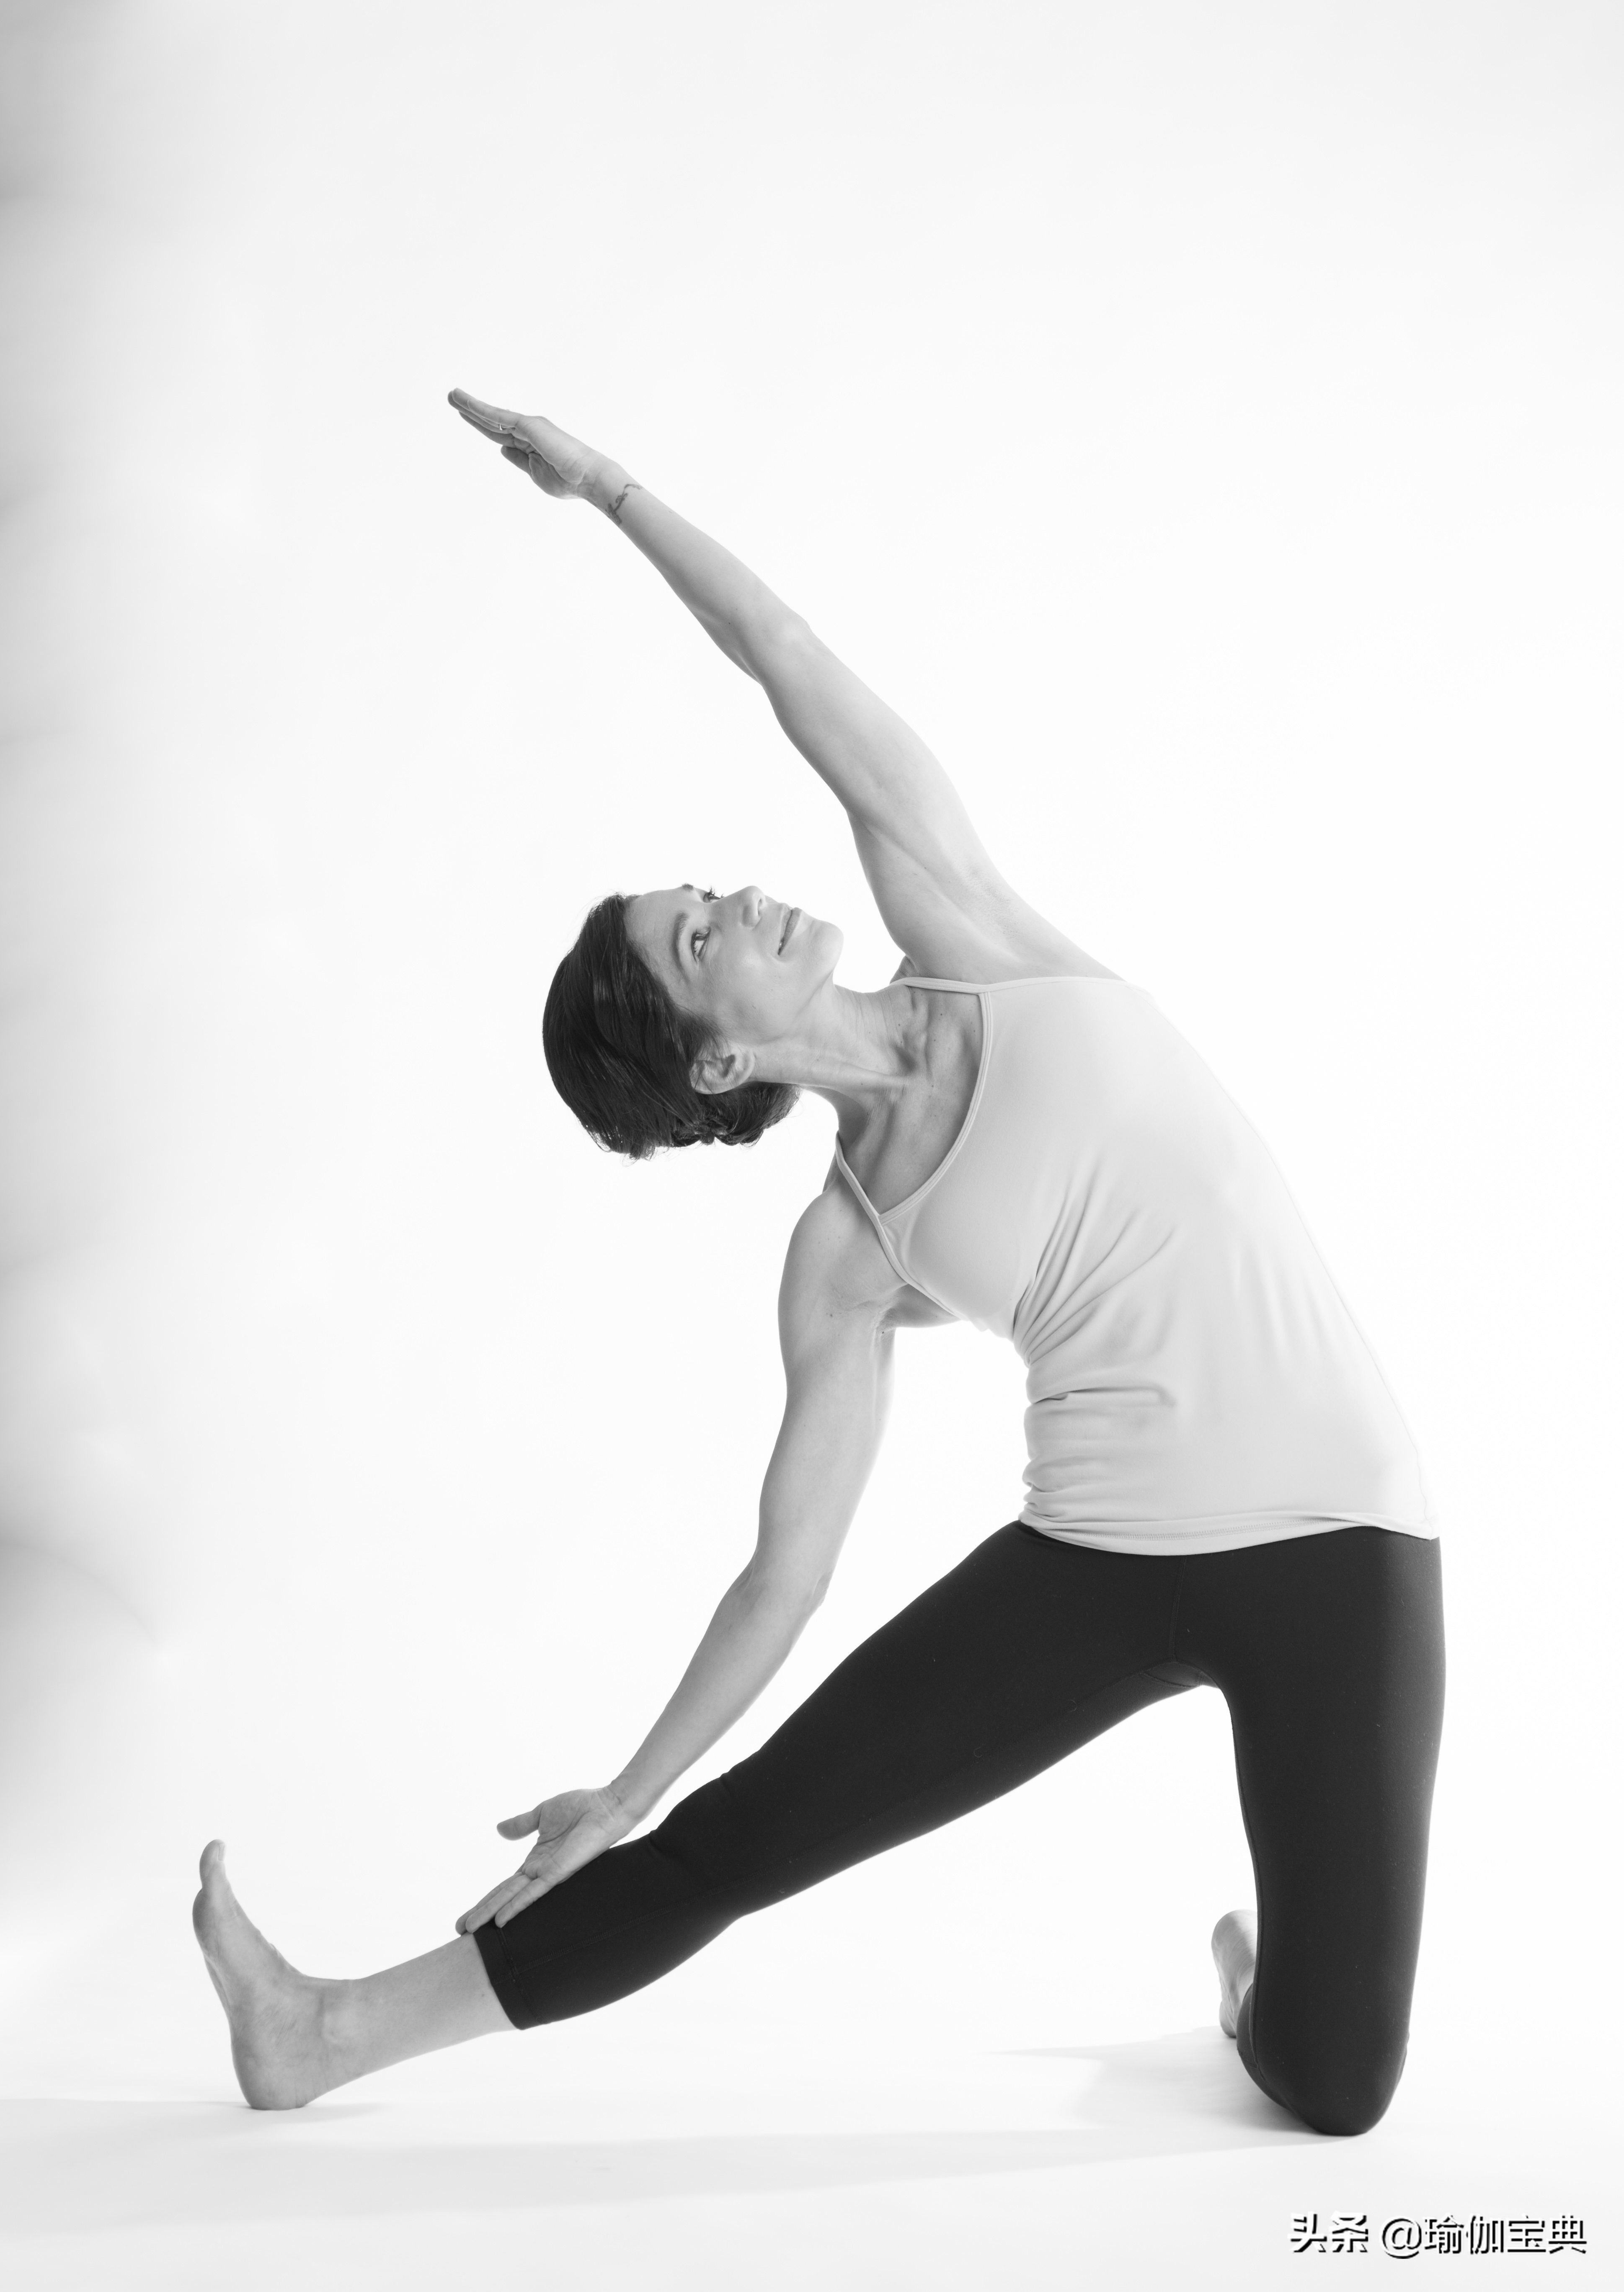 11个瑜伽伸展可以缓解背部疼痛 身体两侧所得到的伸展是难以置信的